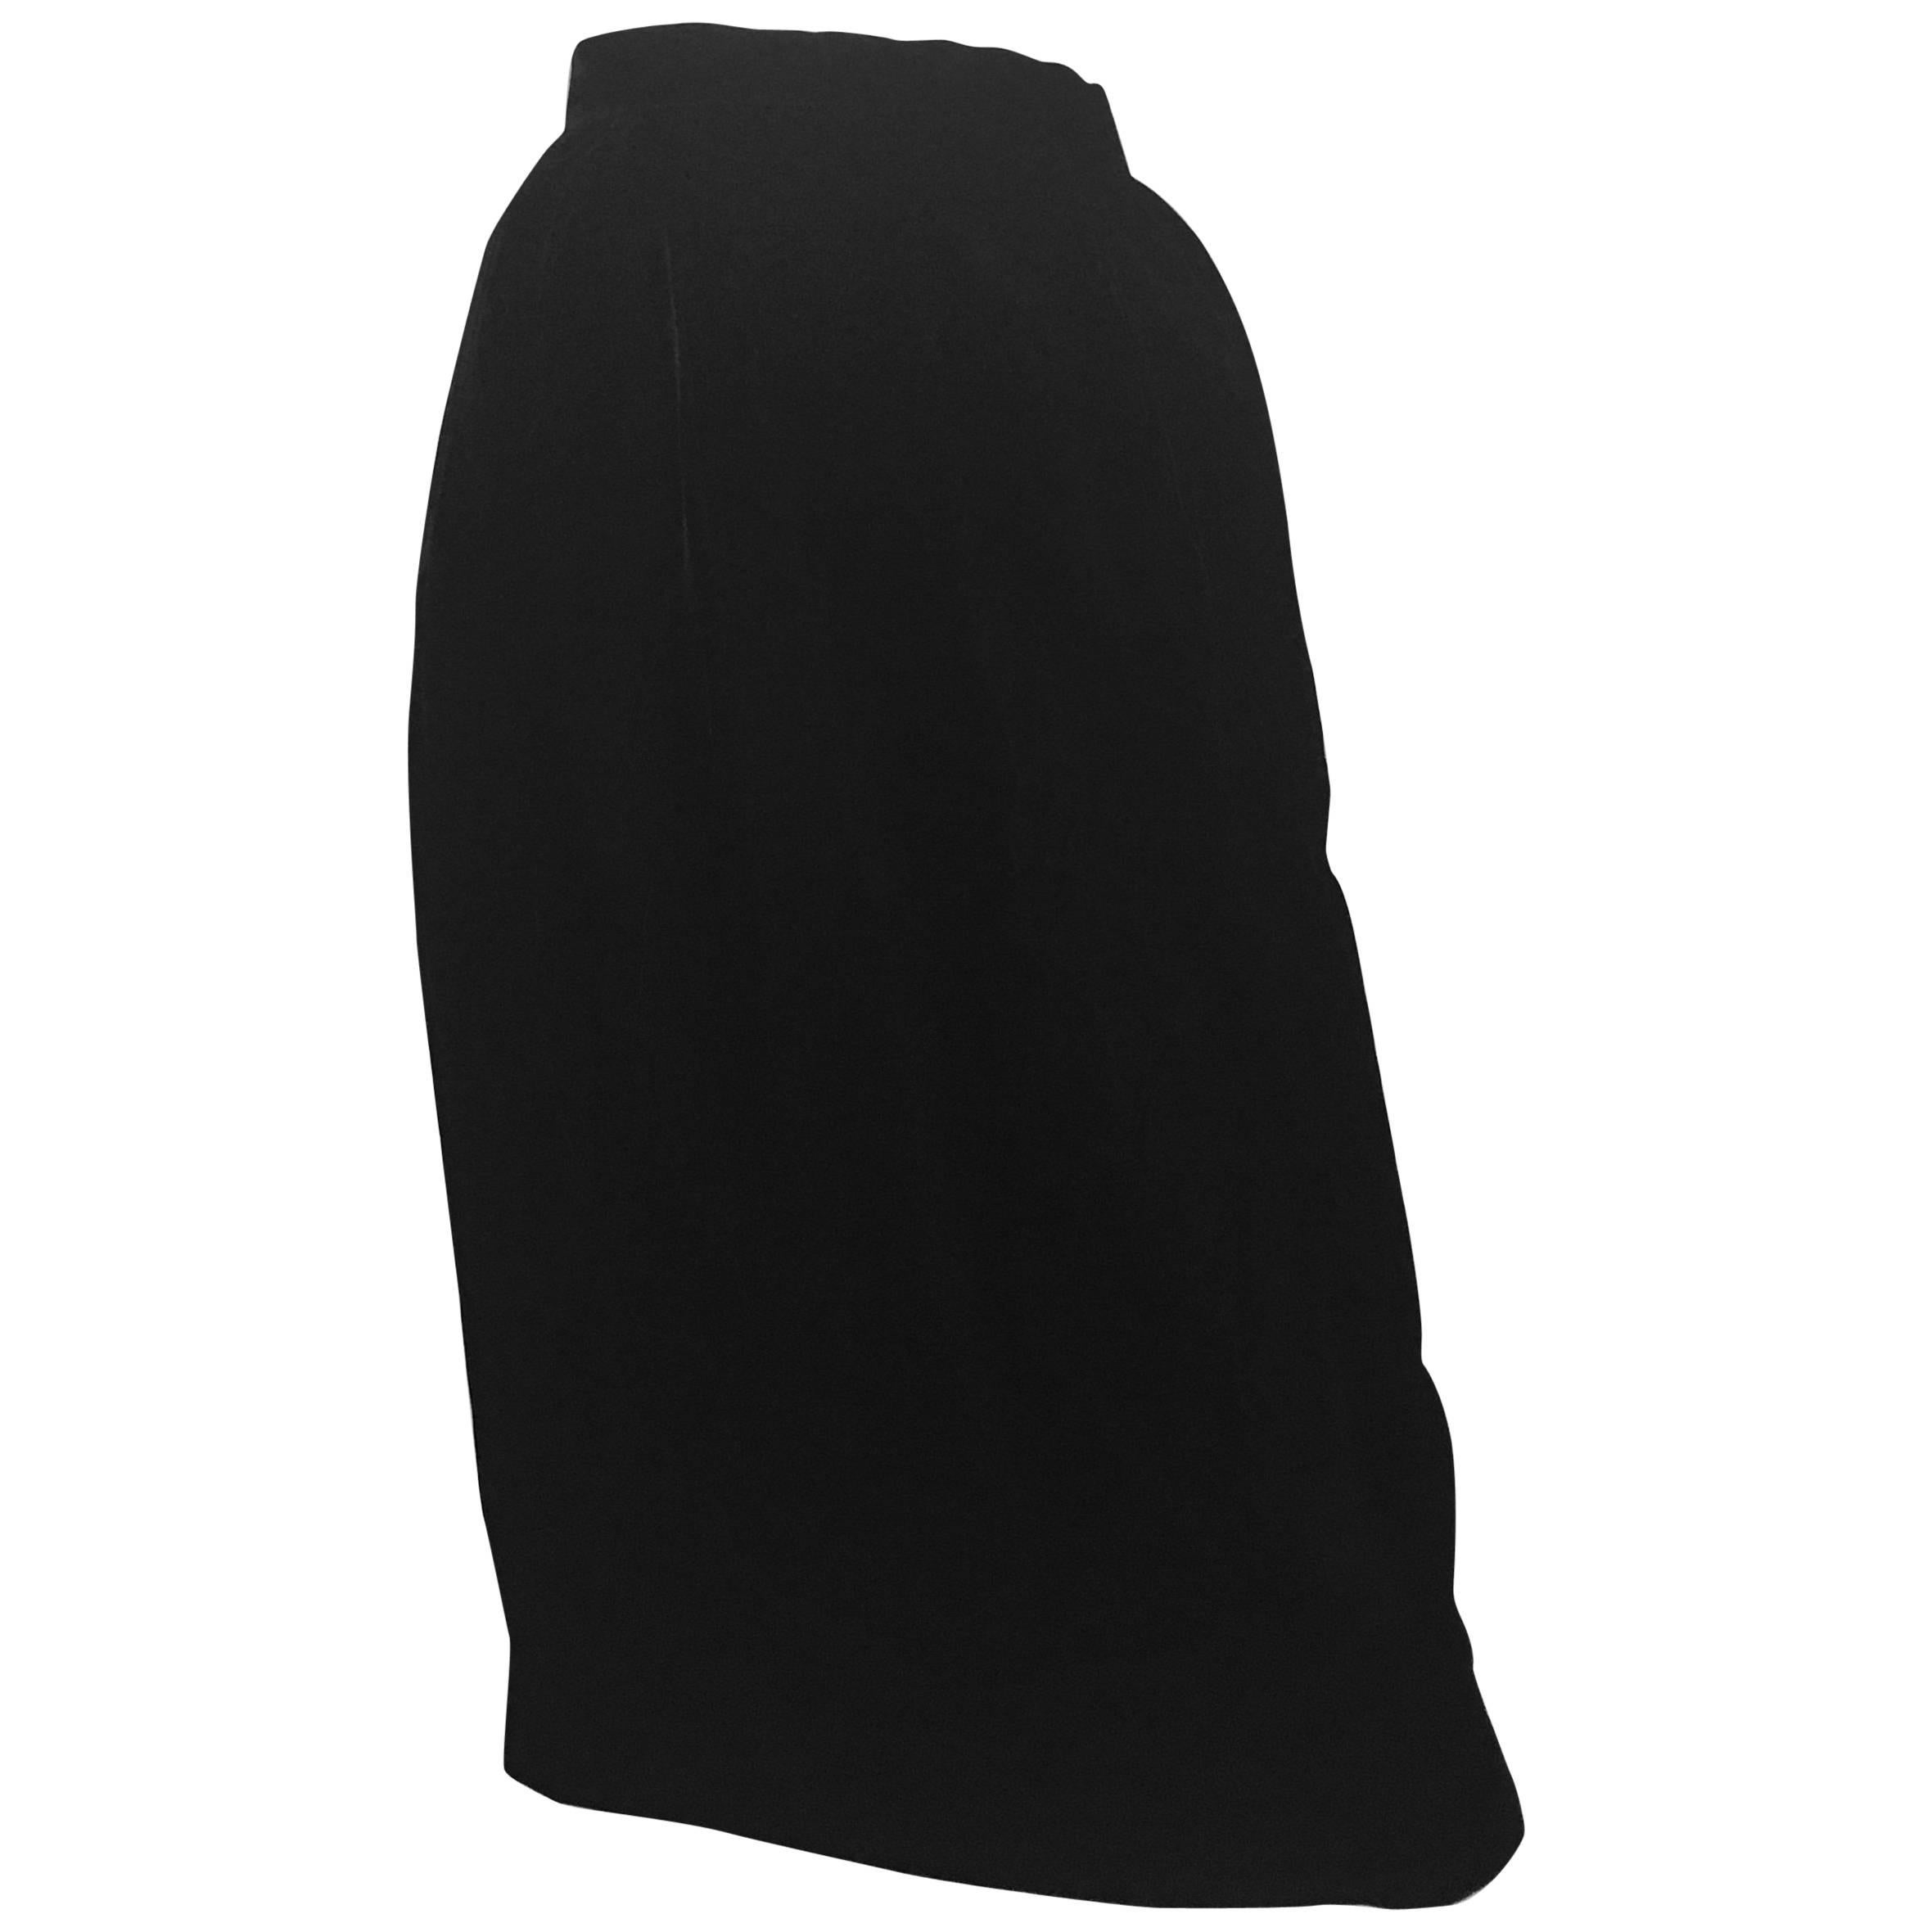 Oscar de la Renta 1980s Black Velvet Long Skirt Size 6. Never Worn. For Sale